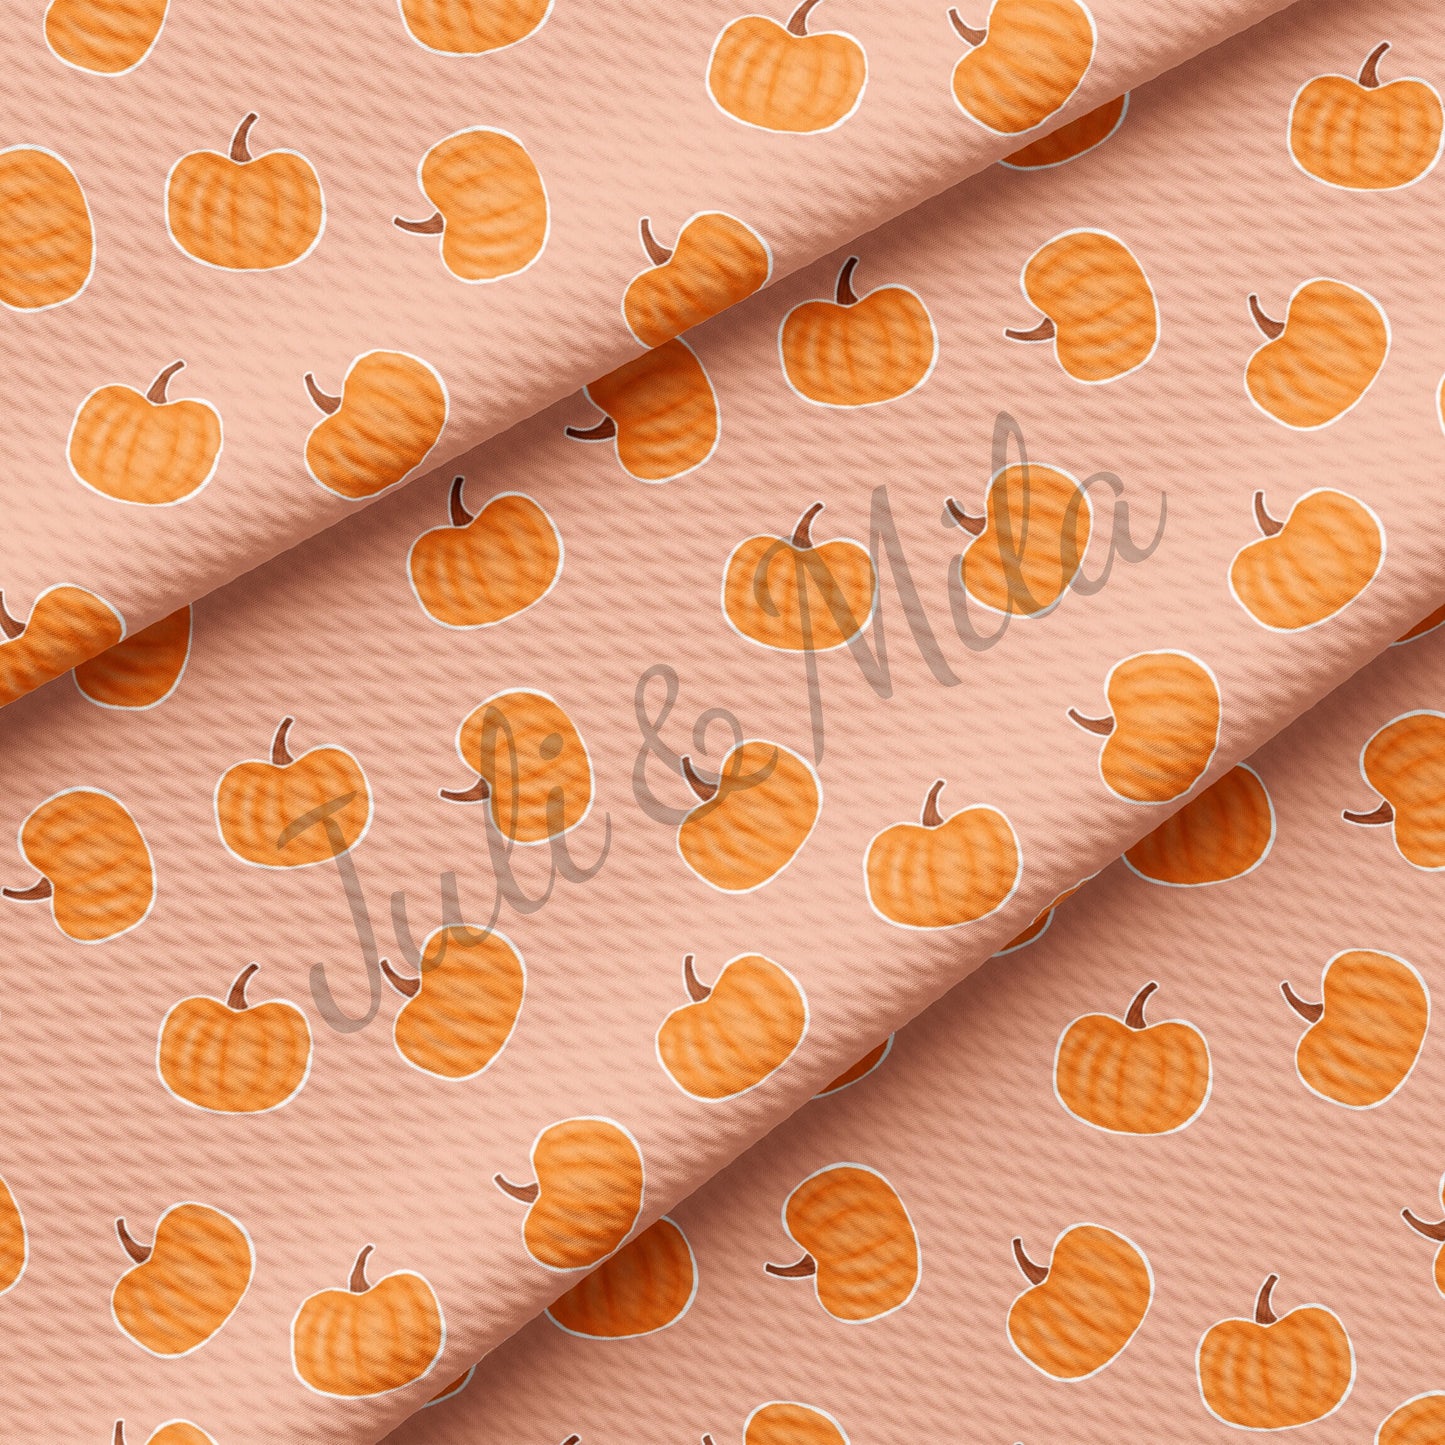 Bullet Textured Fabric pumpkin3